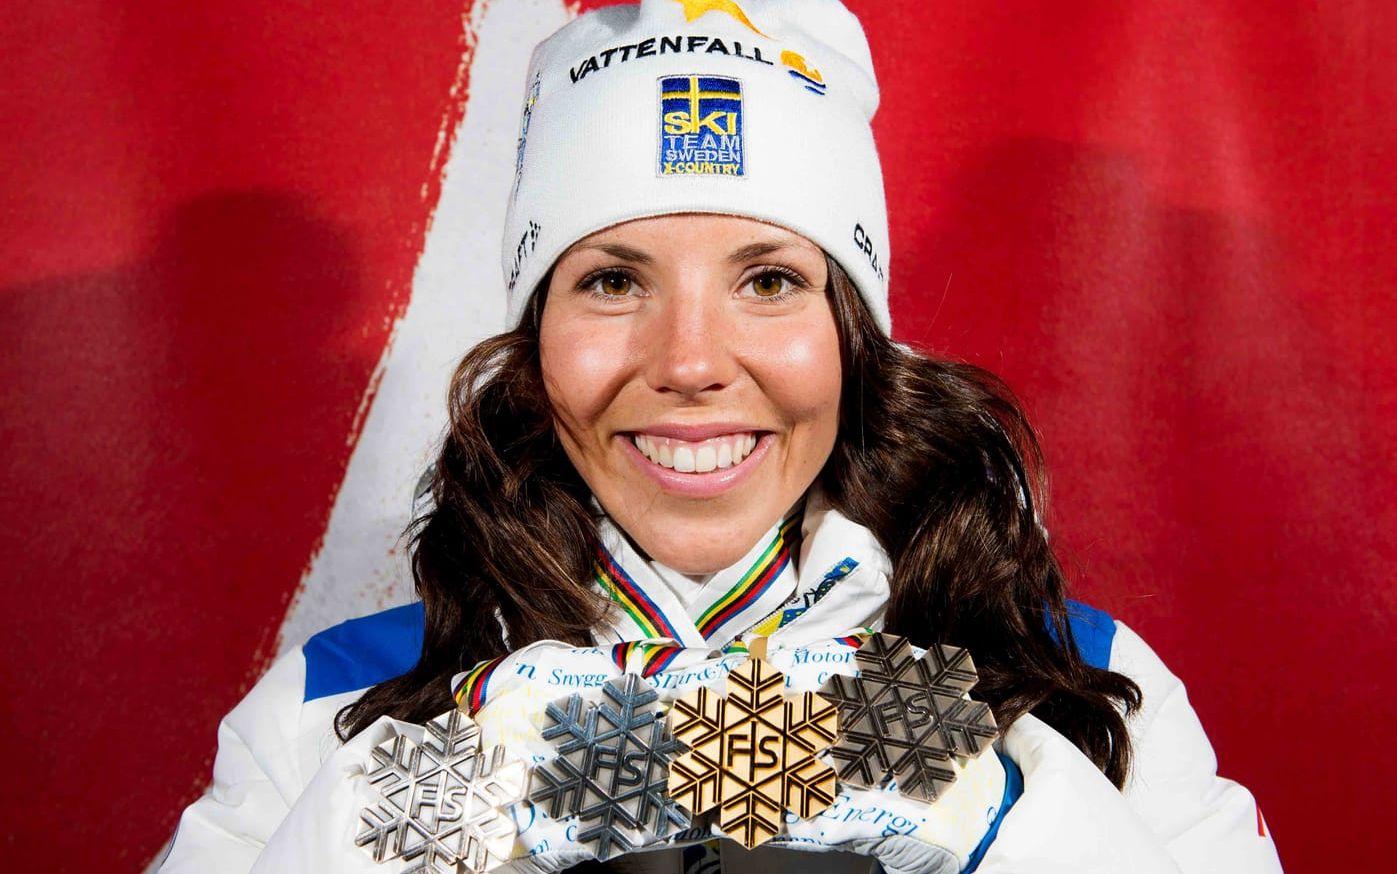 Sammanlagt har hon tolv VM-medaljer och två guld. Förutom det i Falun, vann hon även sprintstafetten i Holmenkollen 2011. Foto: Bildbyrån